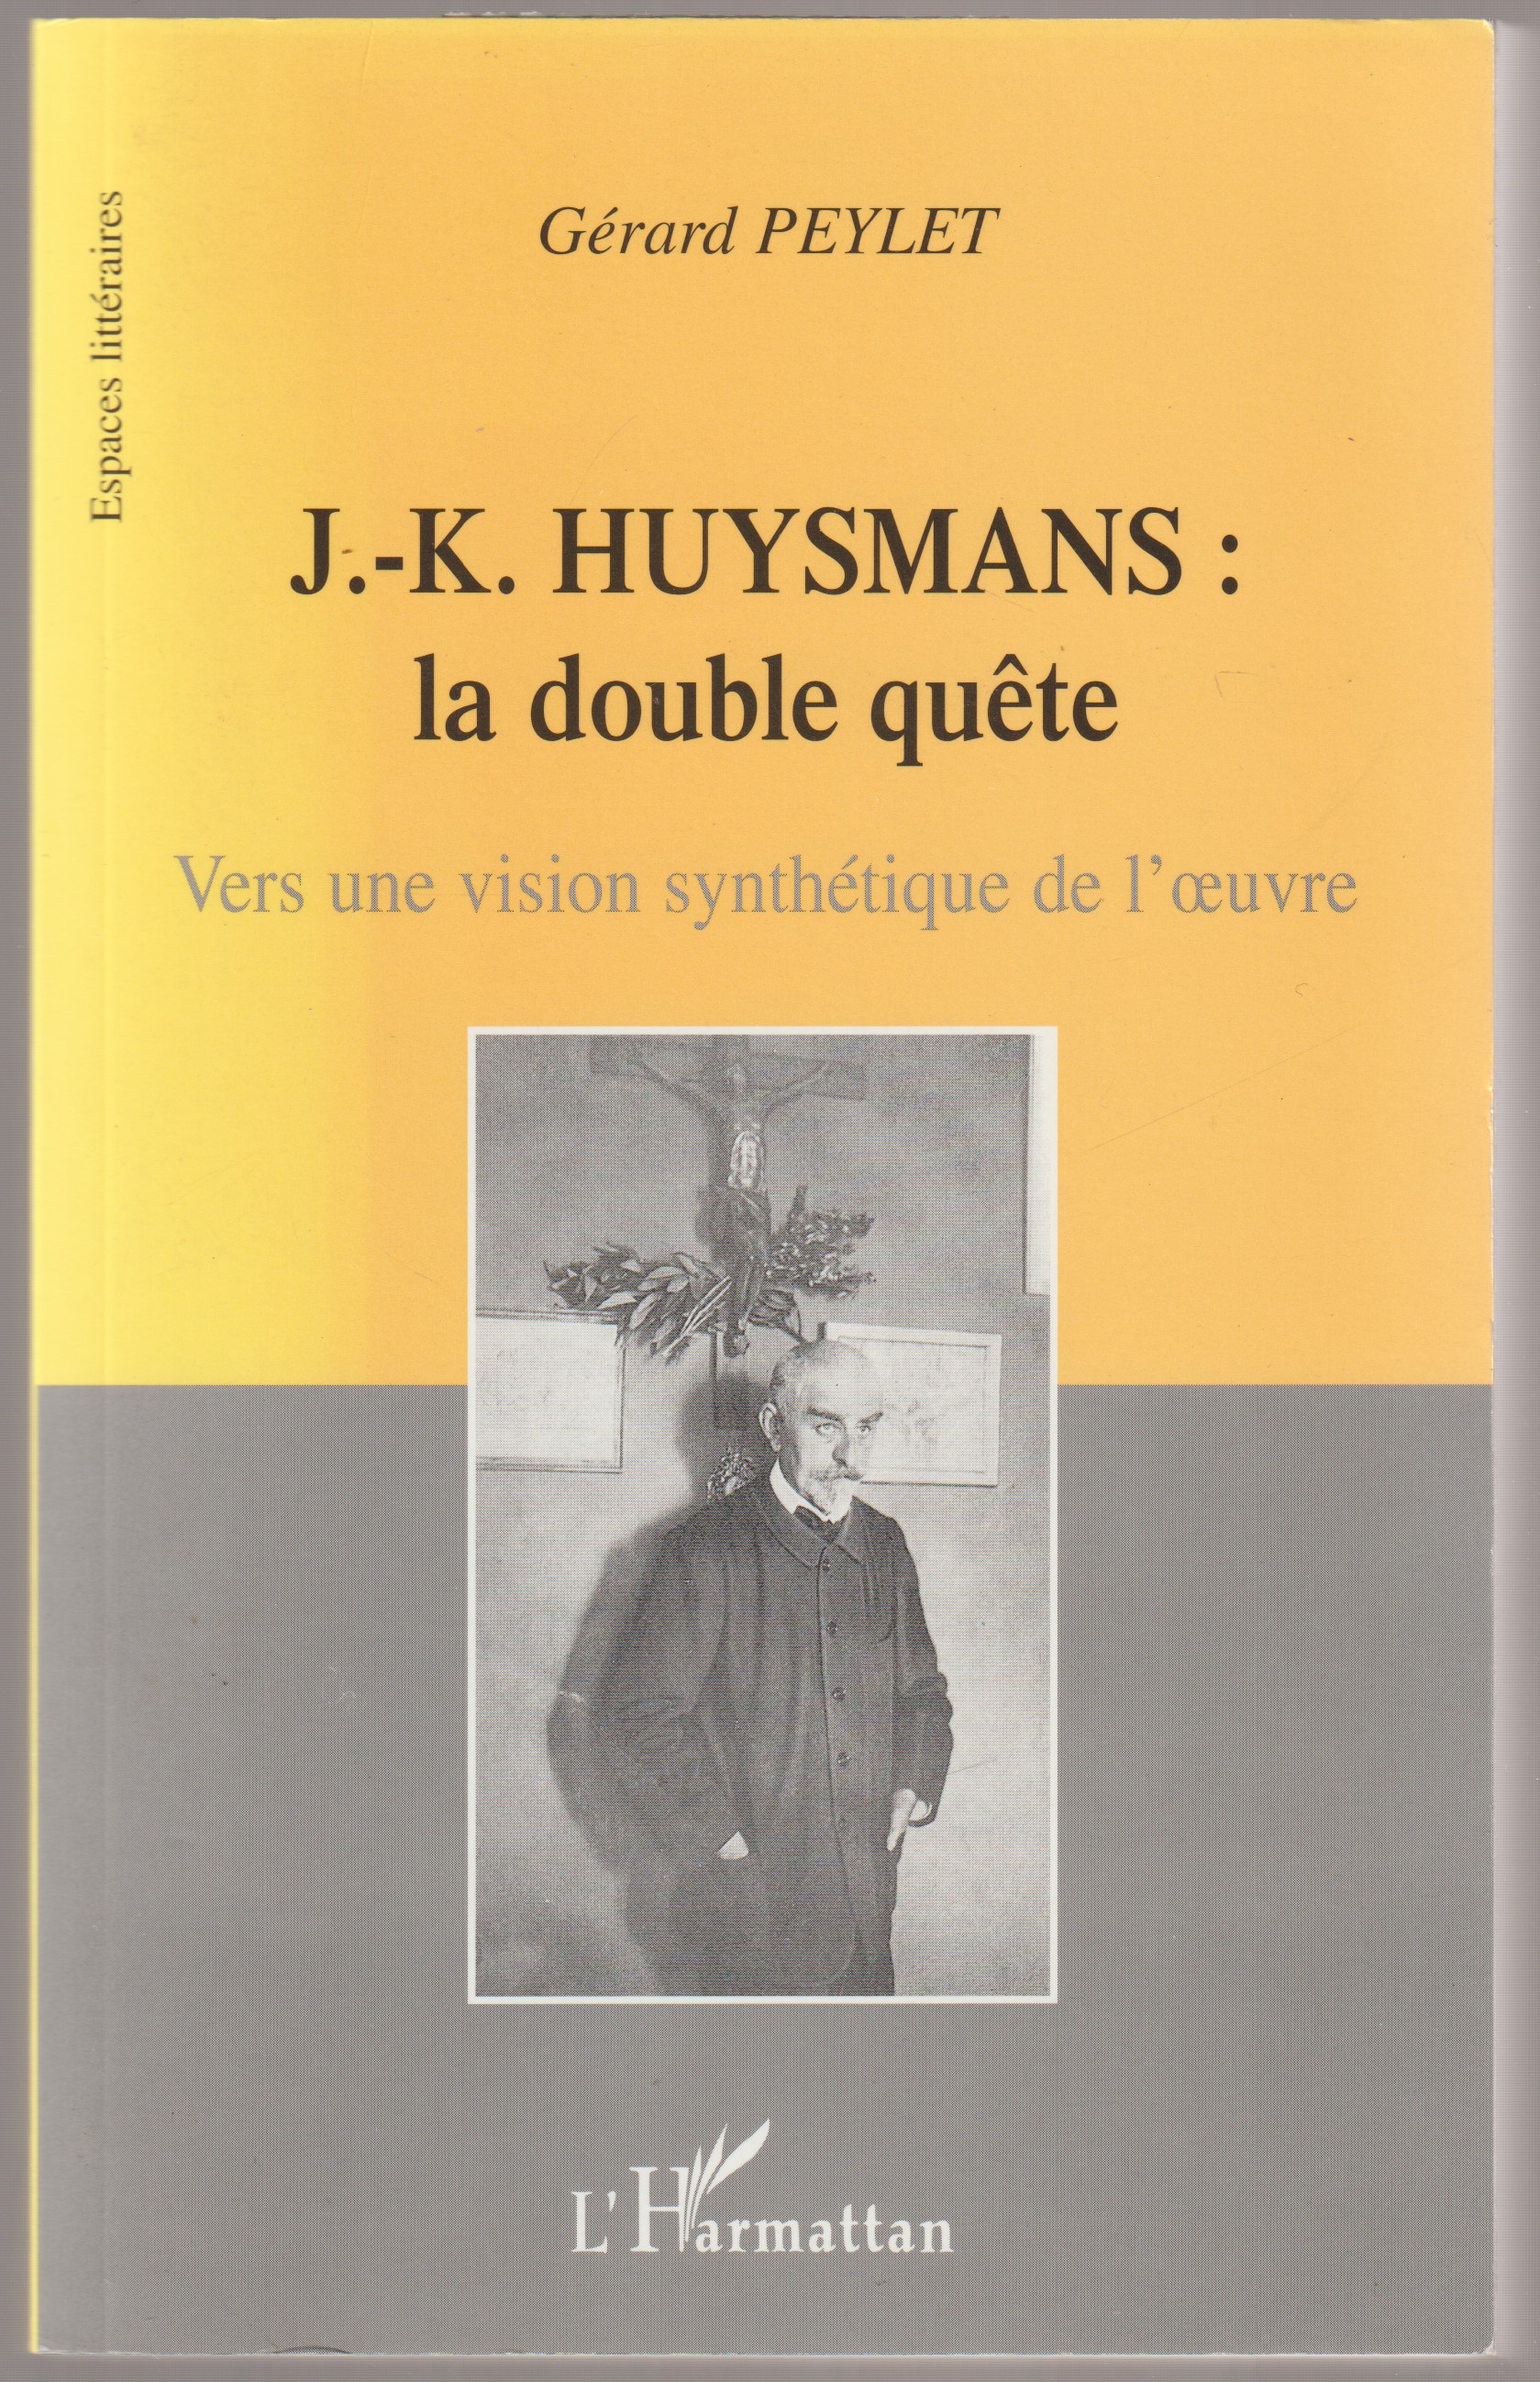 J.-K. Huysmans : la double quete, vers une vision synthetique de l'oeuvre